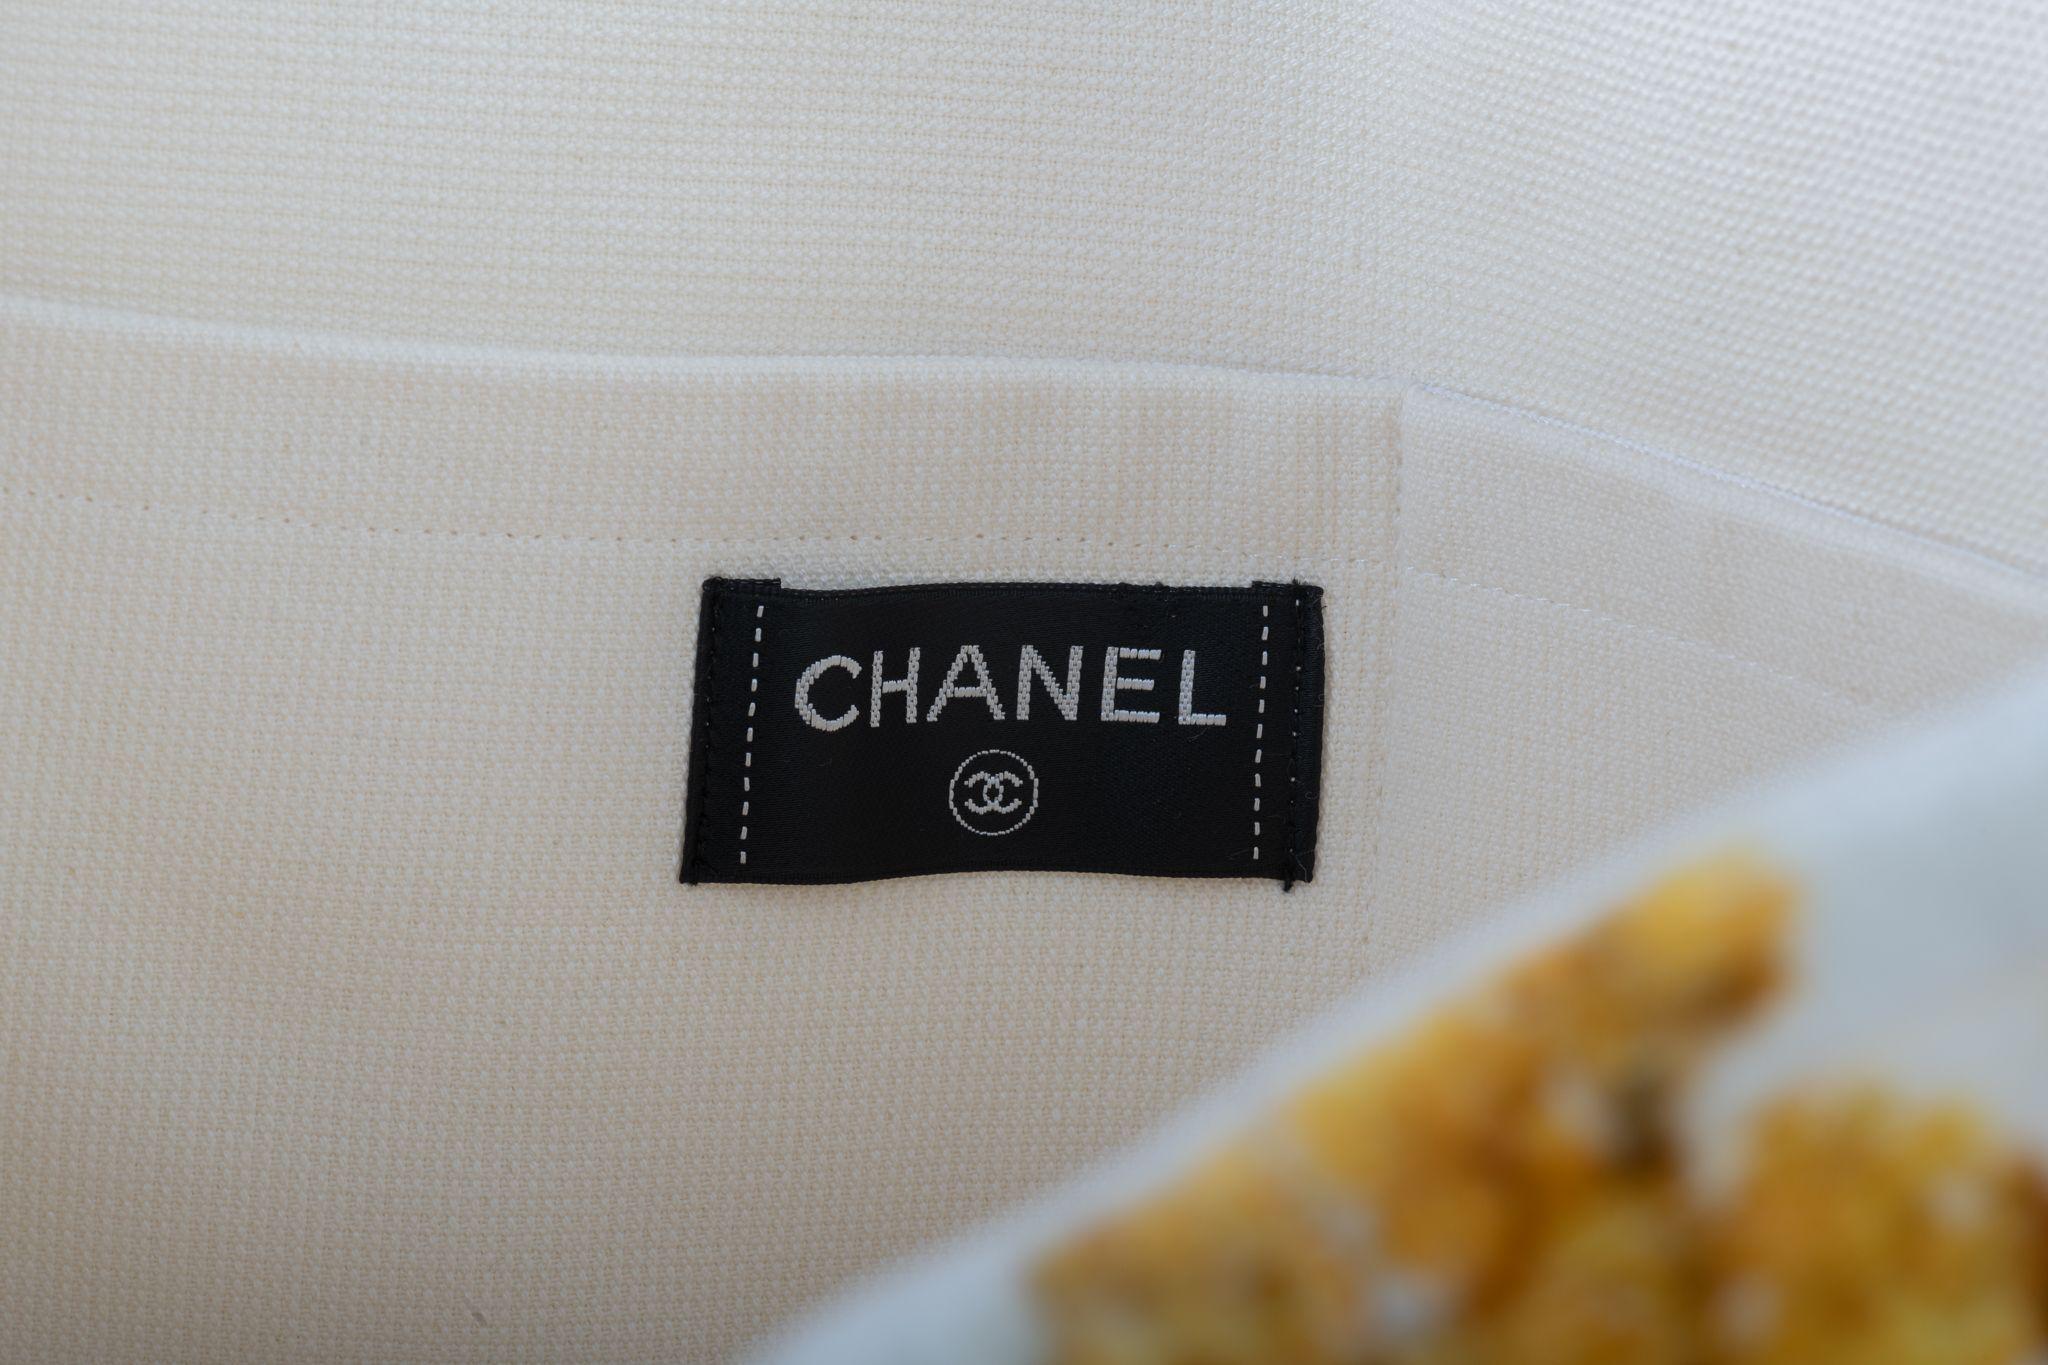 Chanel Paris Grèce 2017 Resort collection sac de plage en tissu éponge. Blanc et or. 2 petites poches intérieures. Hauteur de la poignée : 7,5